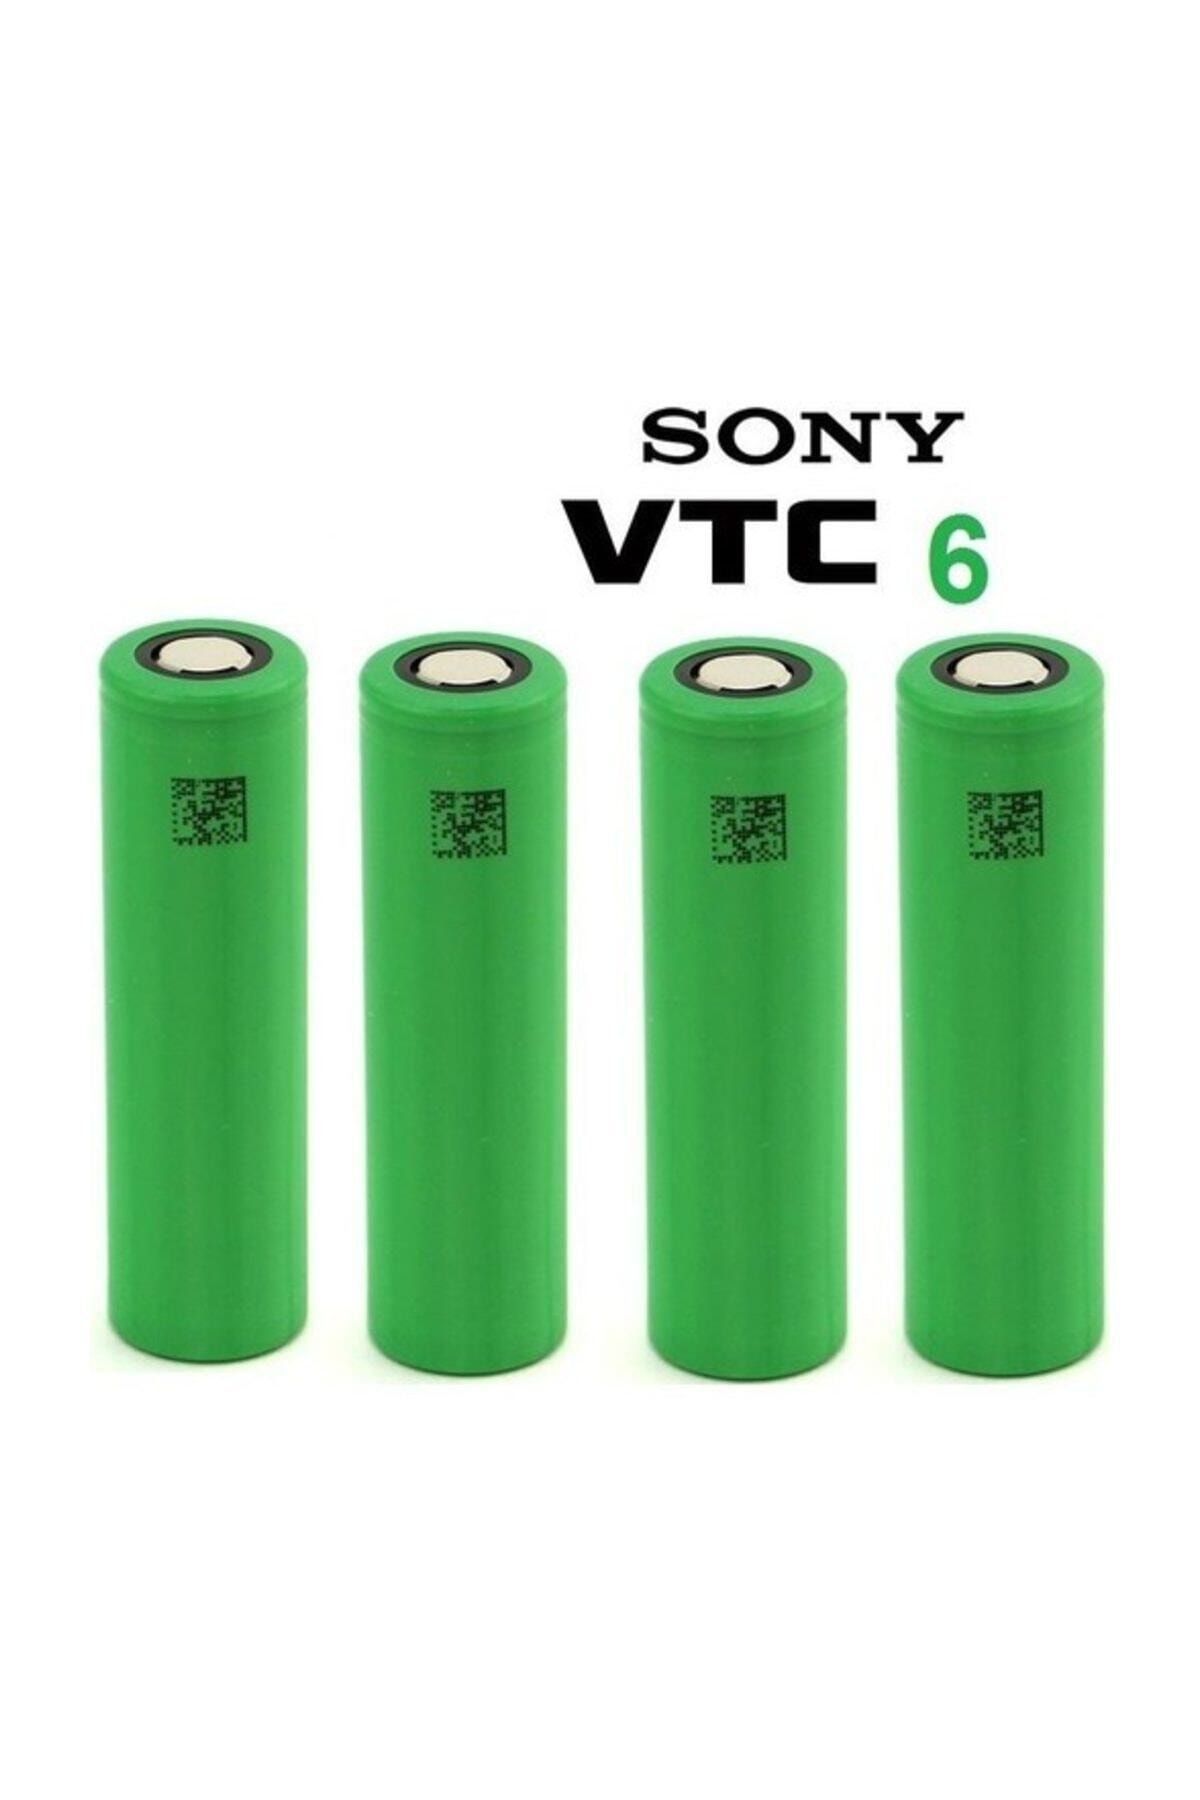 Sony vtc6. Vtc6 Pil. Sony VTC. Vtc6 Box.